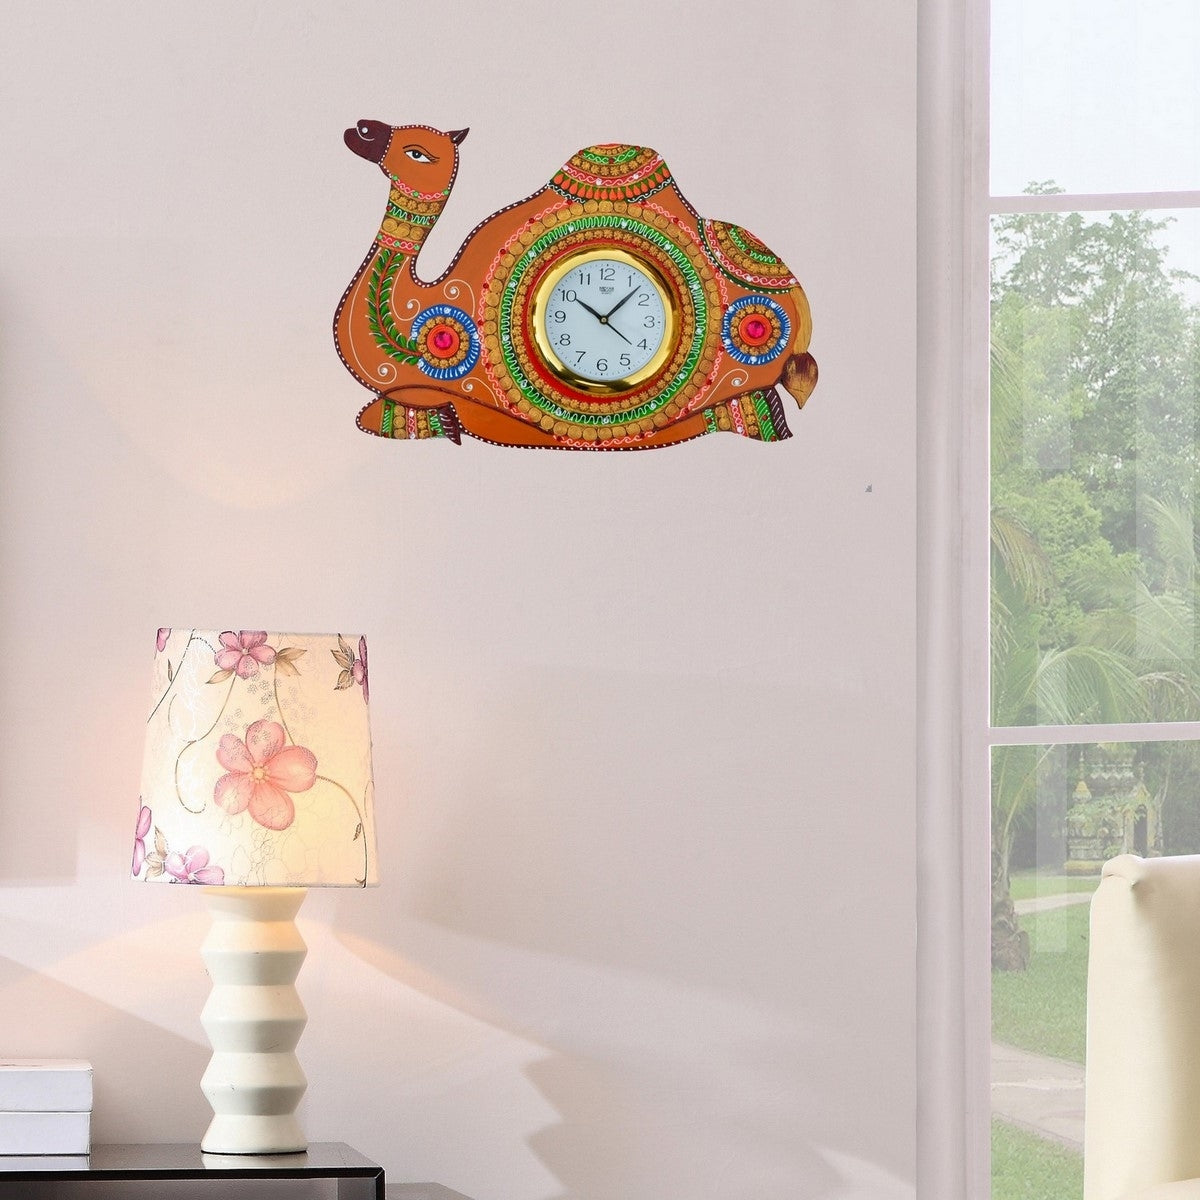 Papier-Mache Camel Handcrafted Wall Clock 2